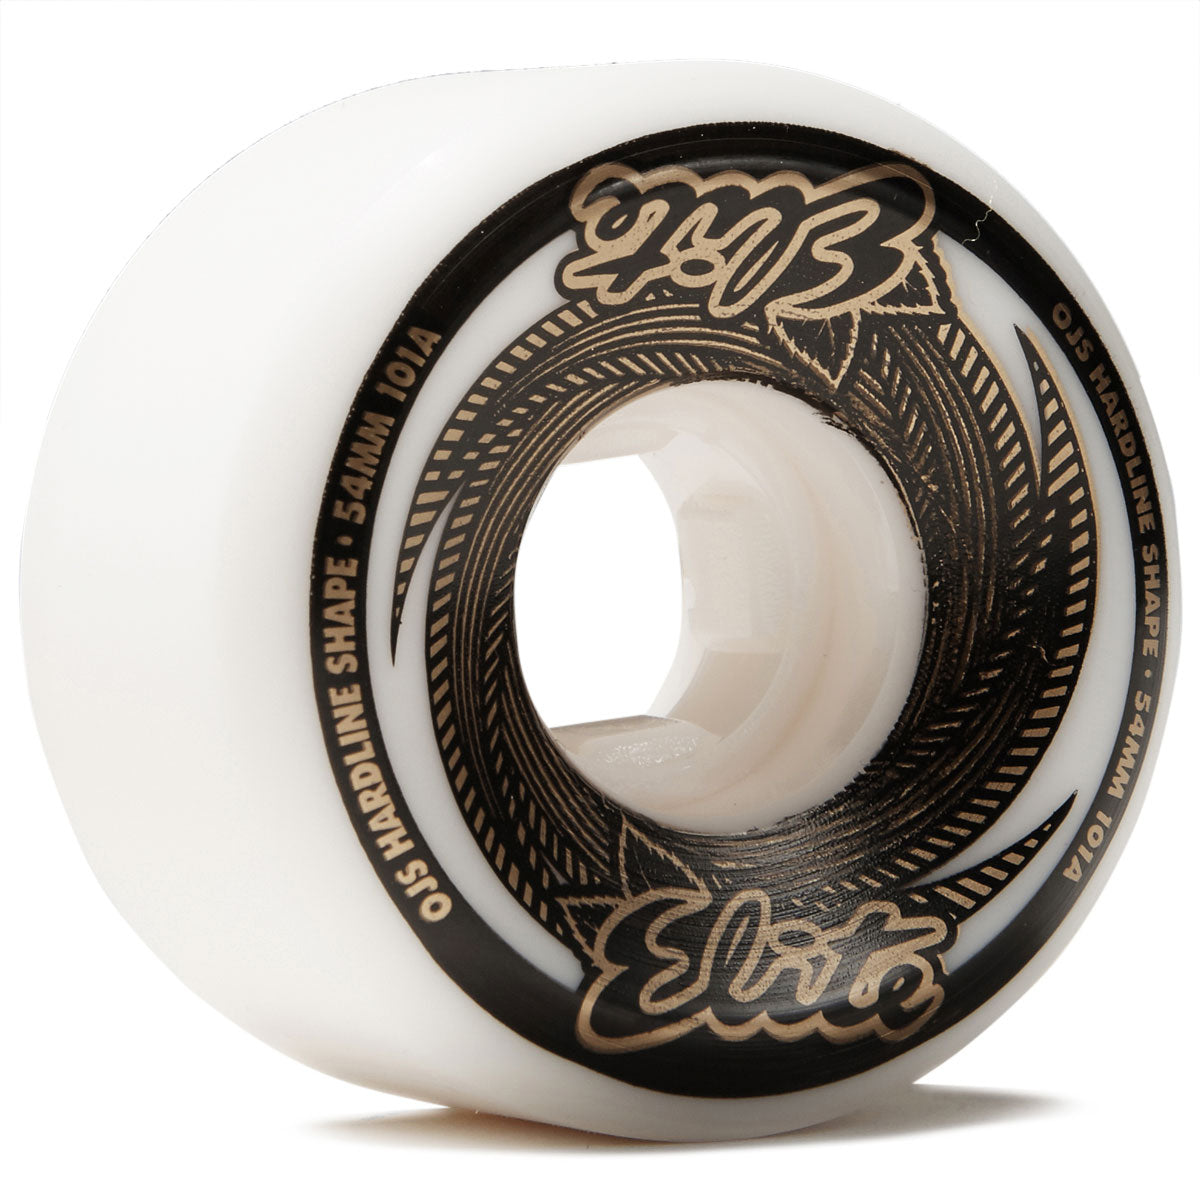 OJ Elite Hardline 101a Skateboard Wheels - White/Gold - 54mm image 1